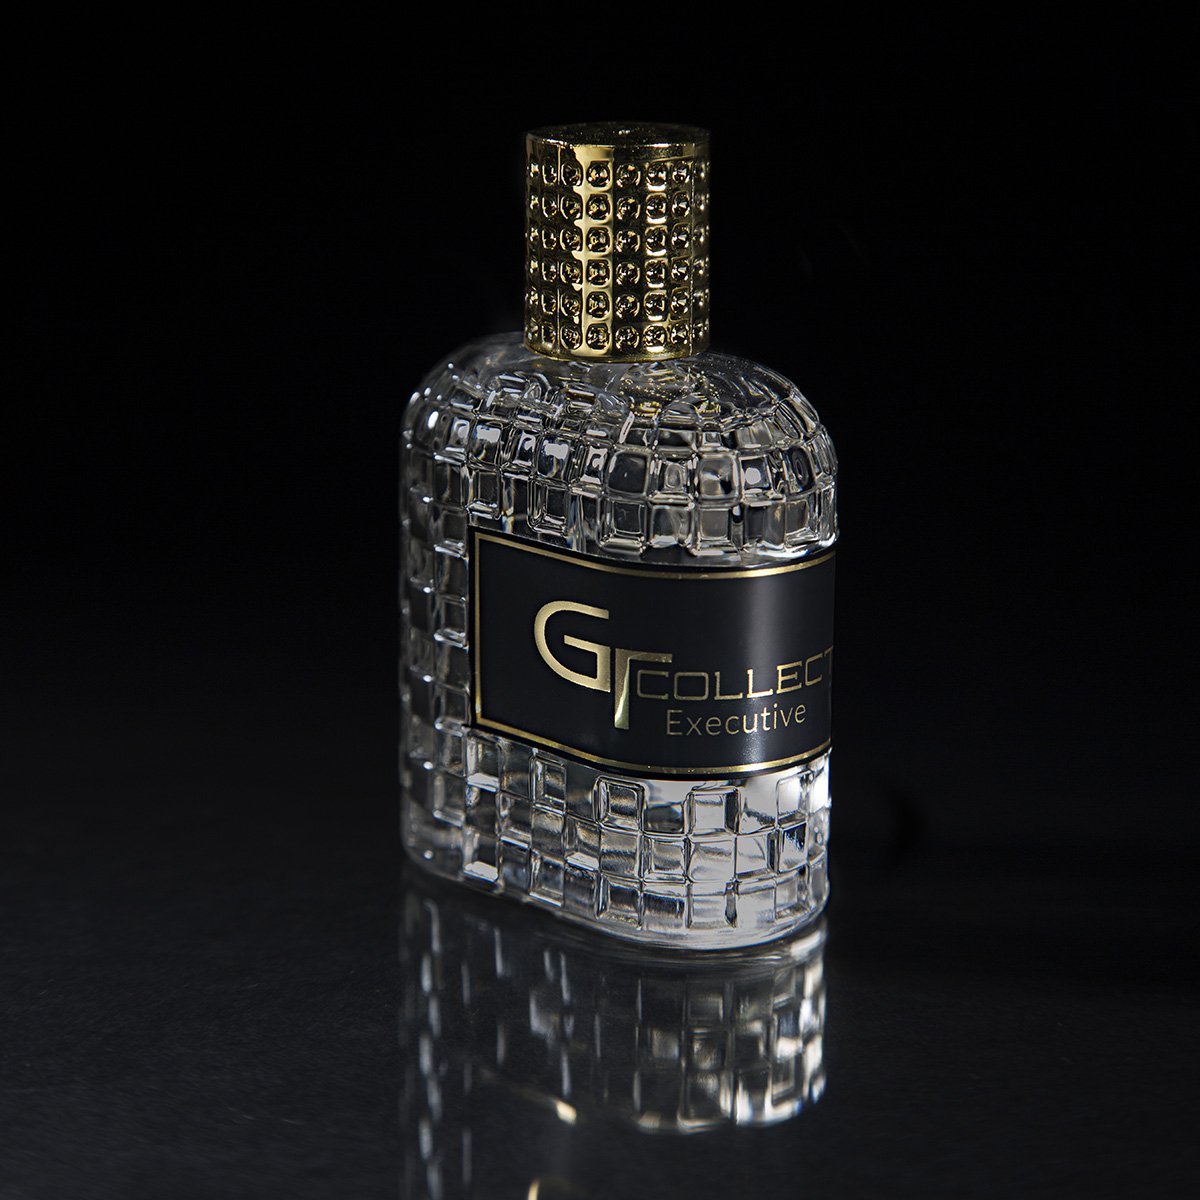 GT collection - Eau De Parfum Women - GT collection